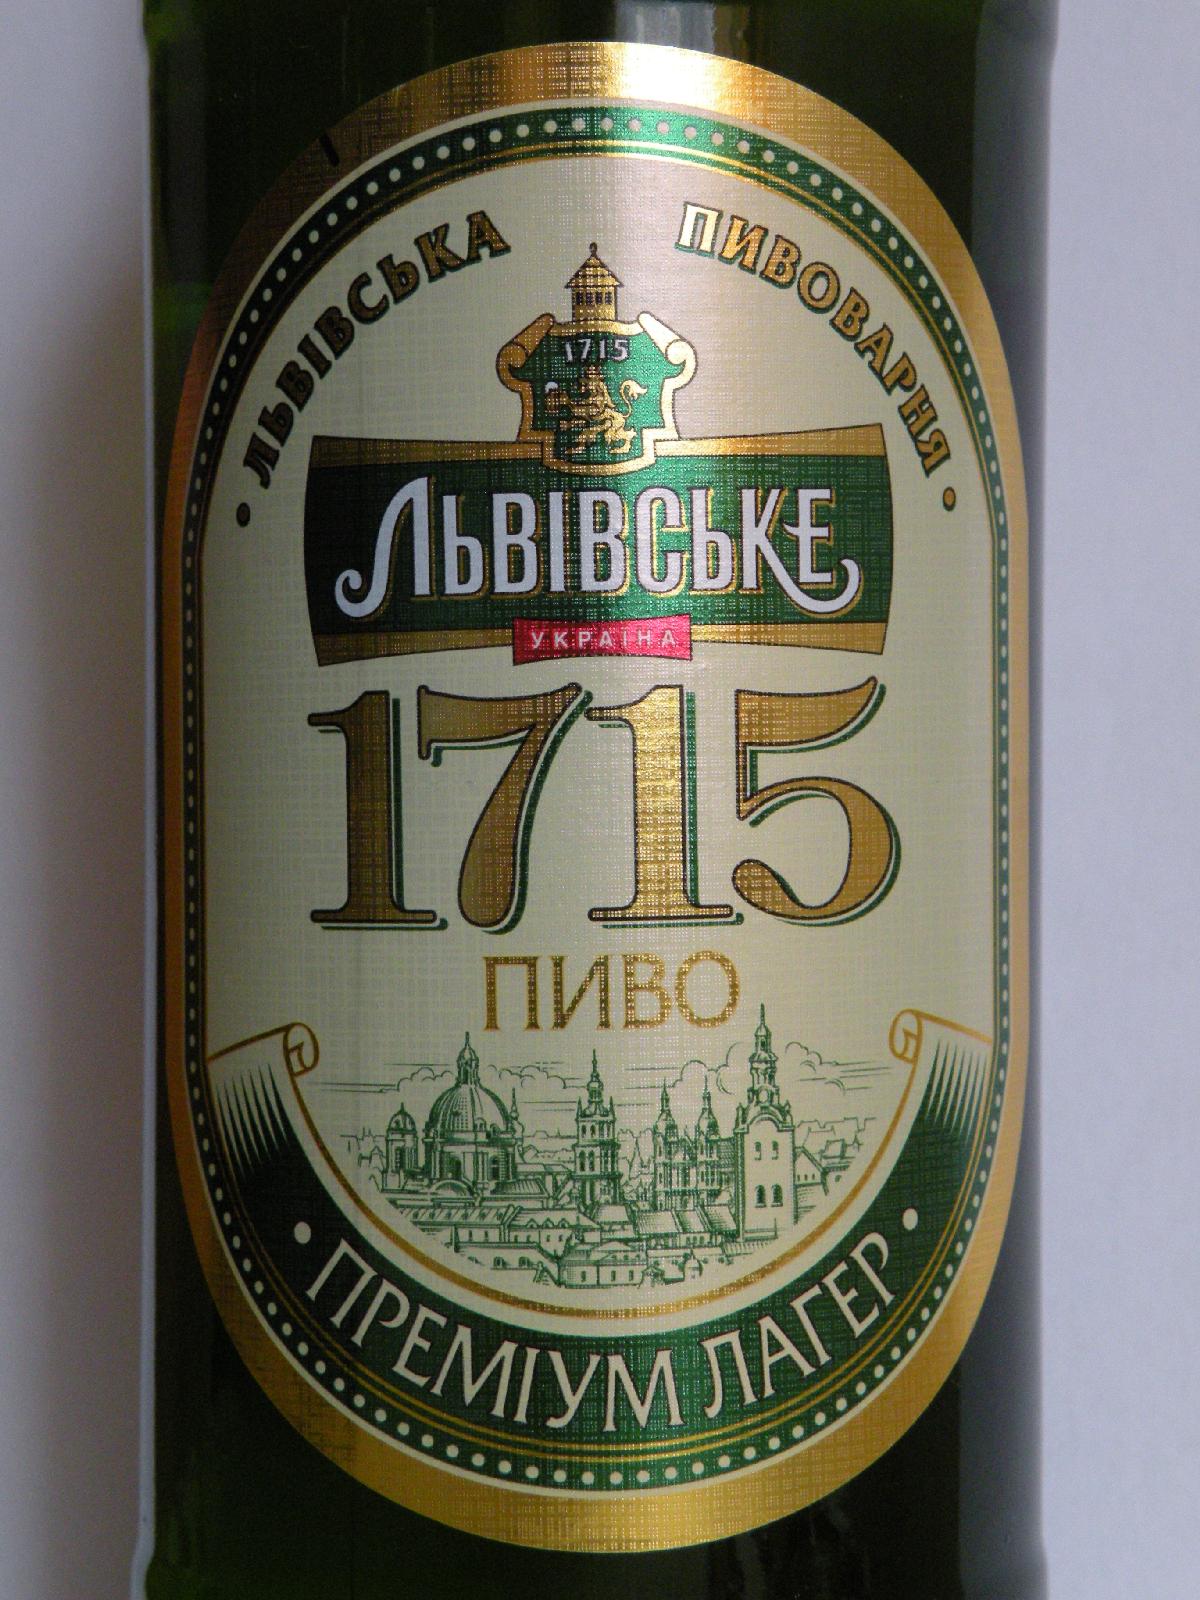 1715-lwowskie-1715-ale-piwo